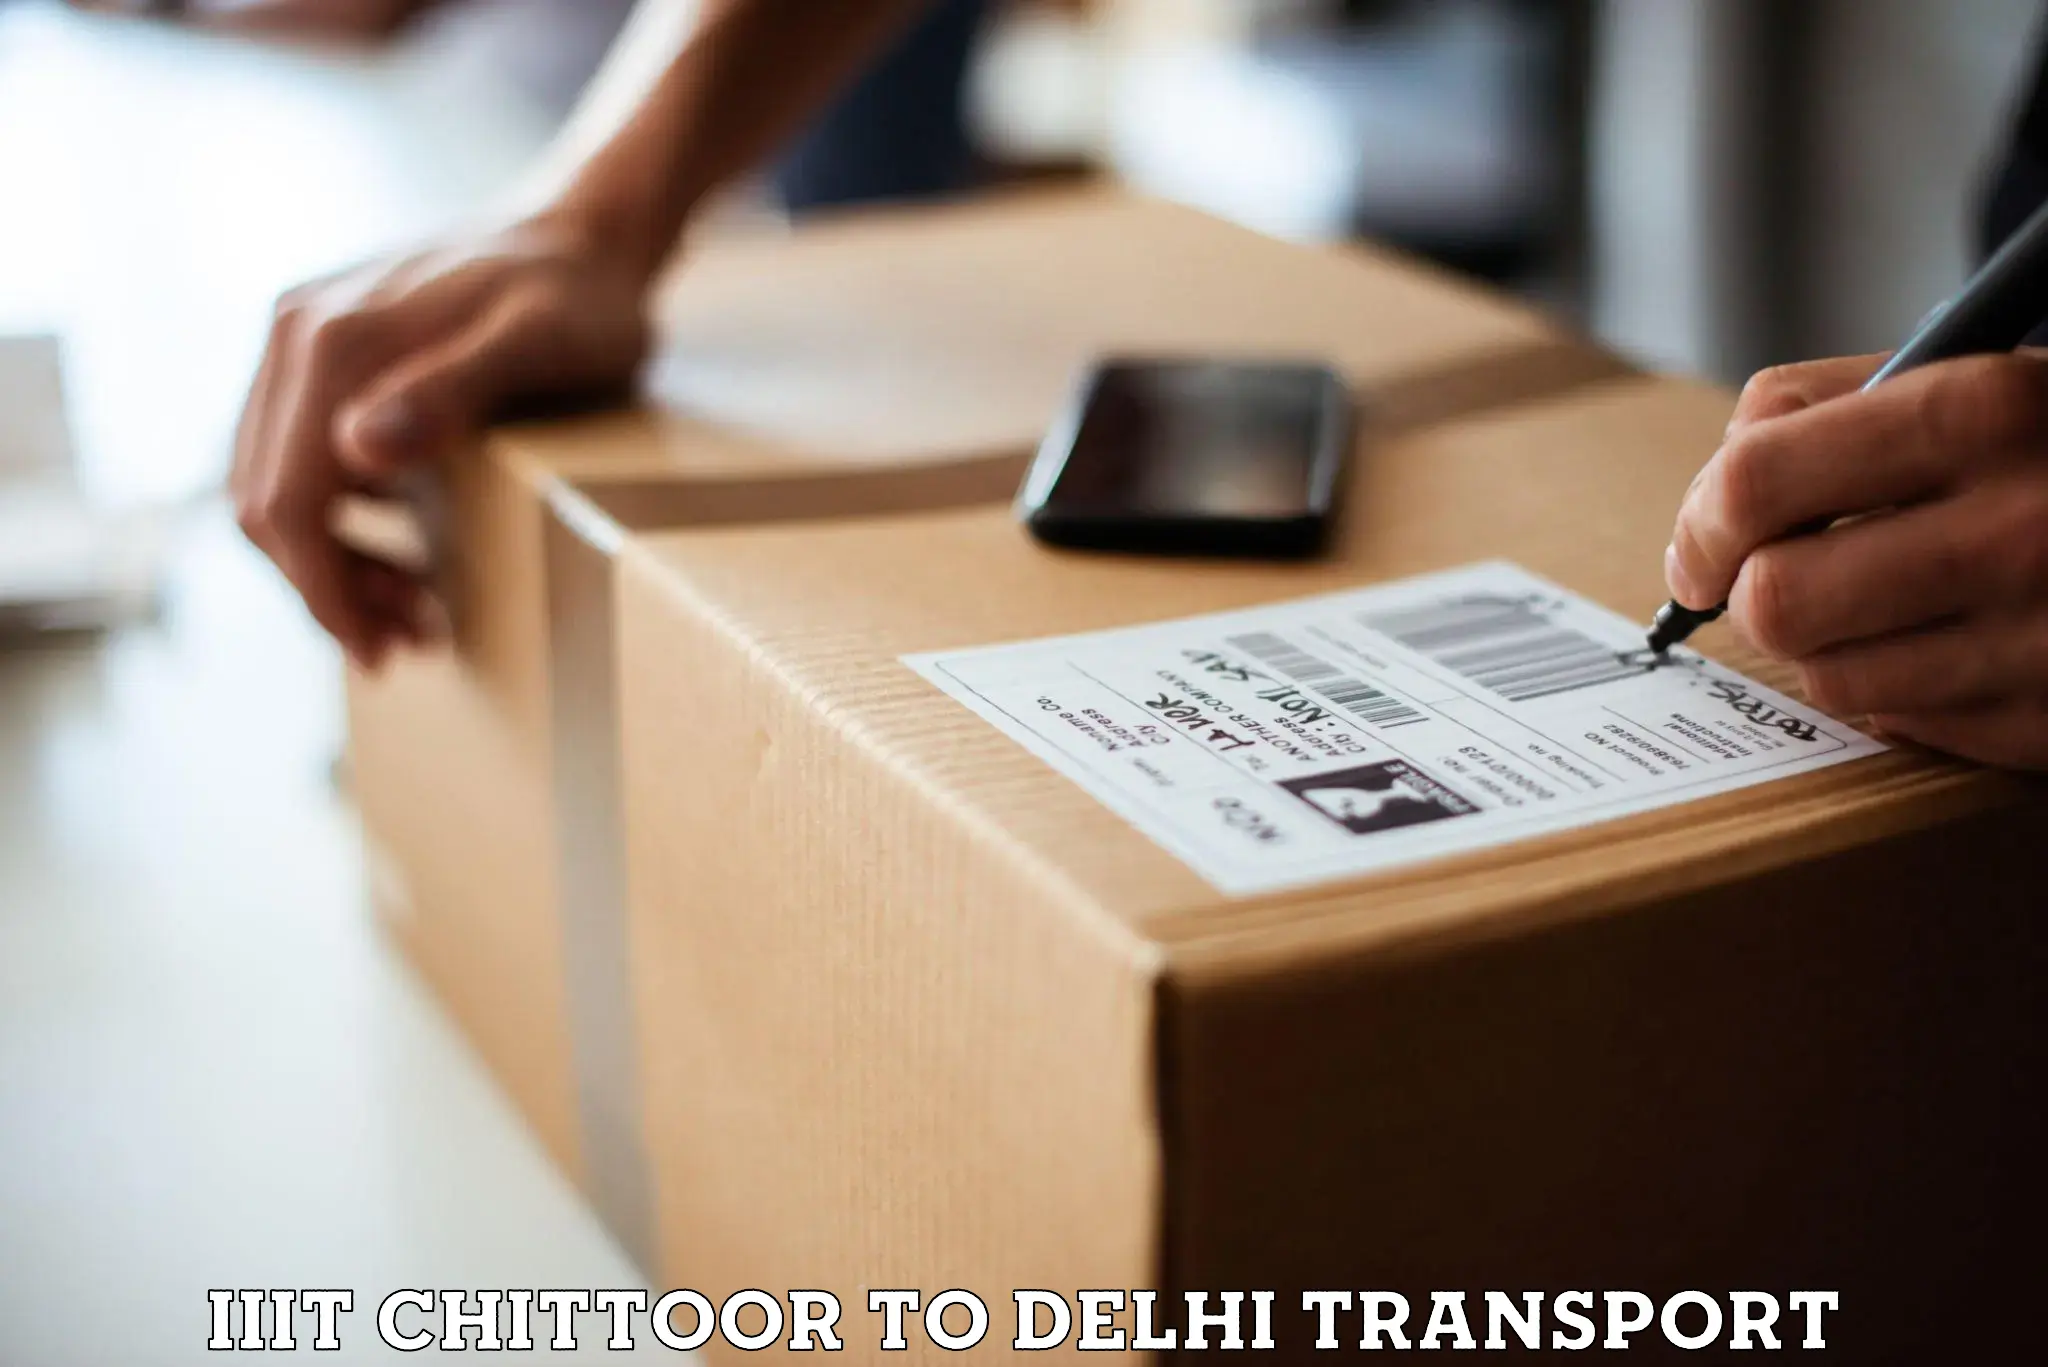 Online transport service IIIT Chittoor to East Delhi